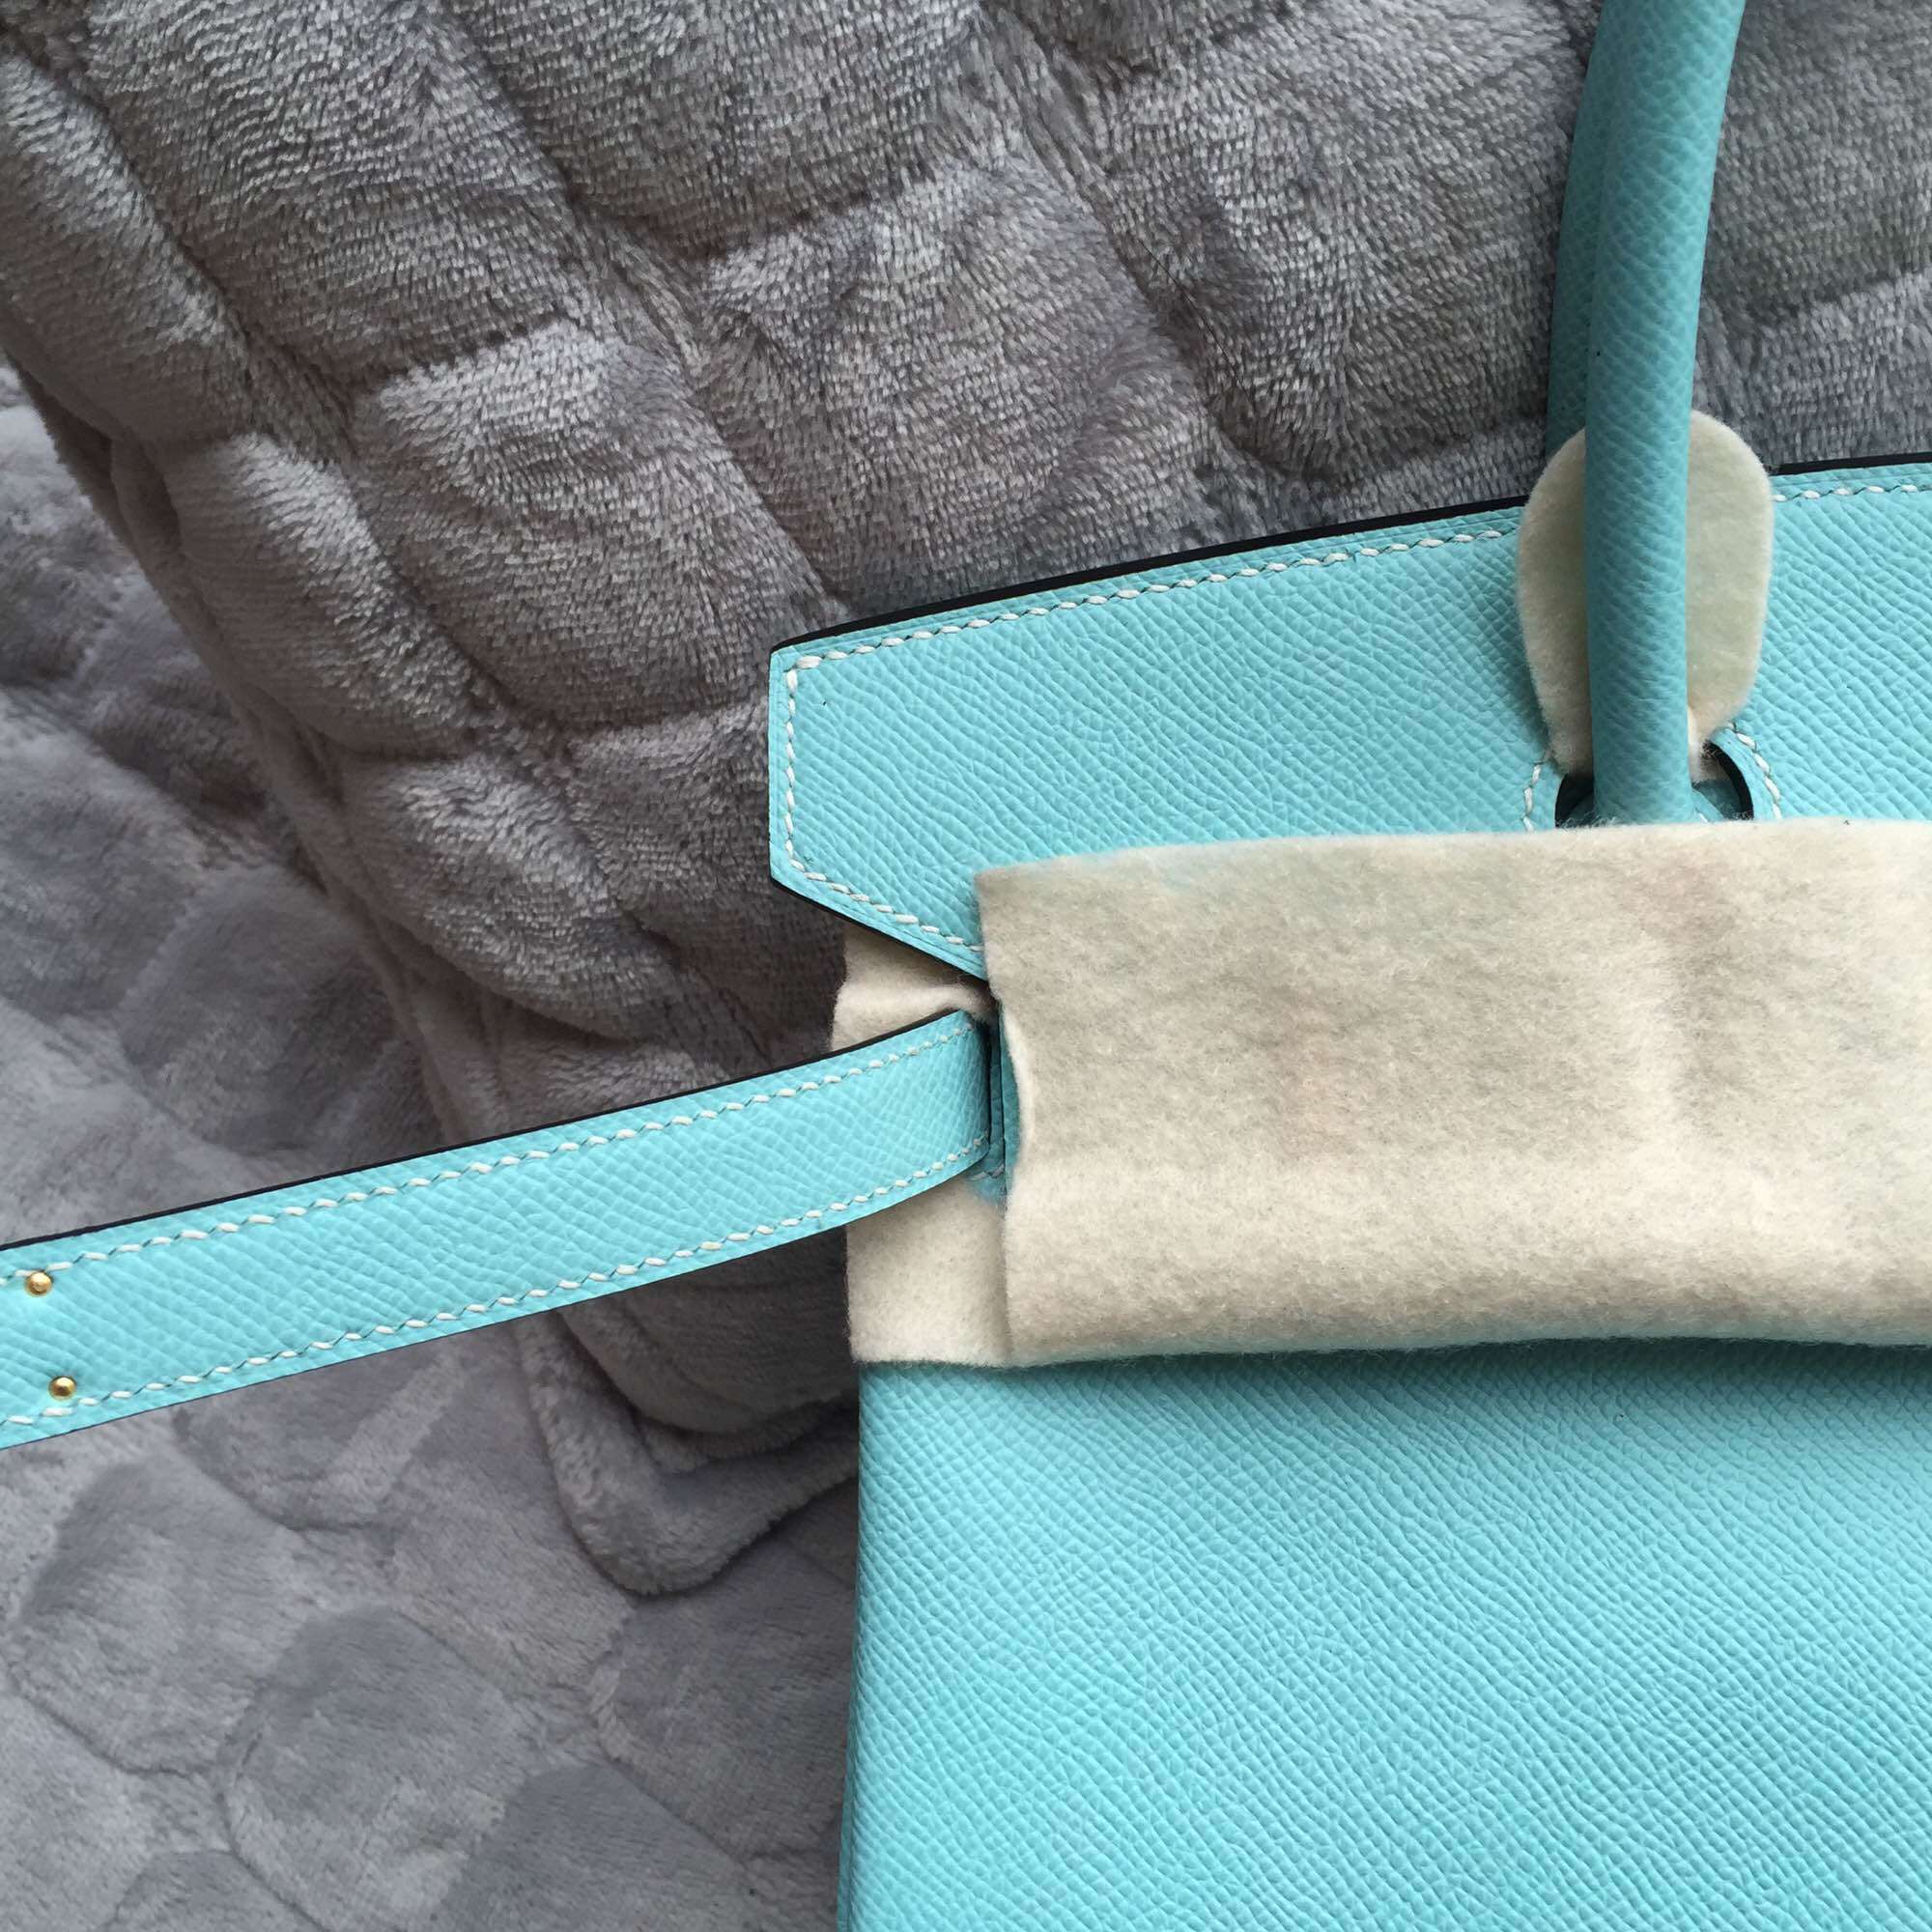 Cheap Hermes Birkin Bag in 3P Lagon Blue Epsom Leather Women&#8217;s Tote Bag 30CM